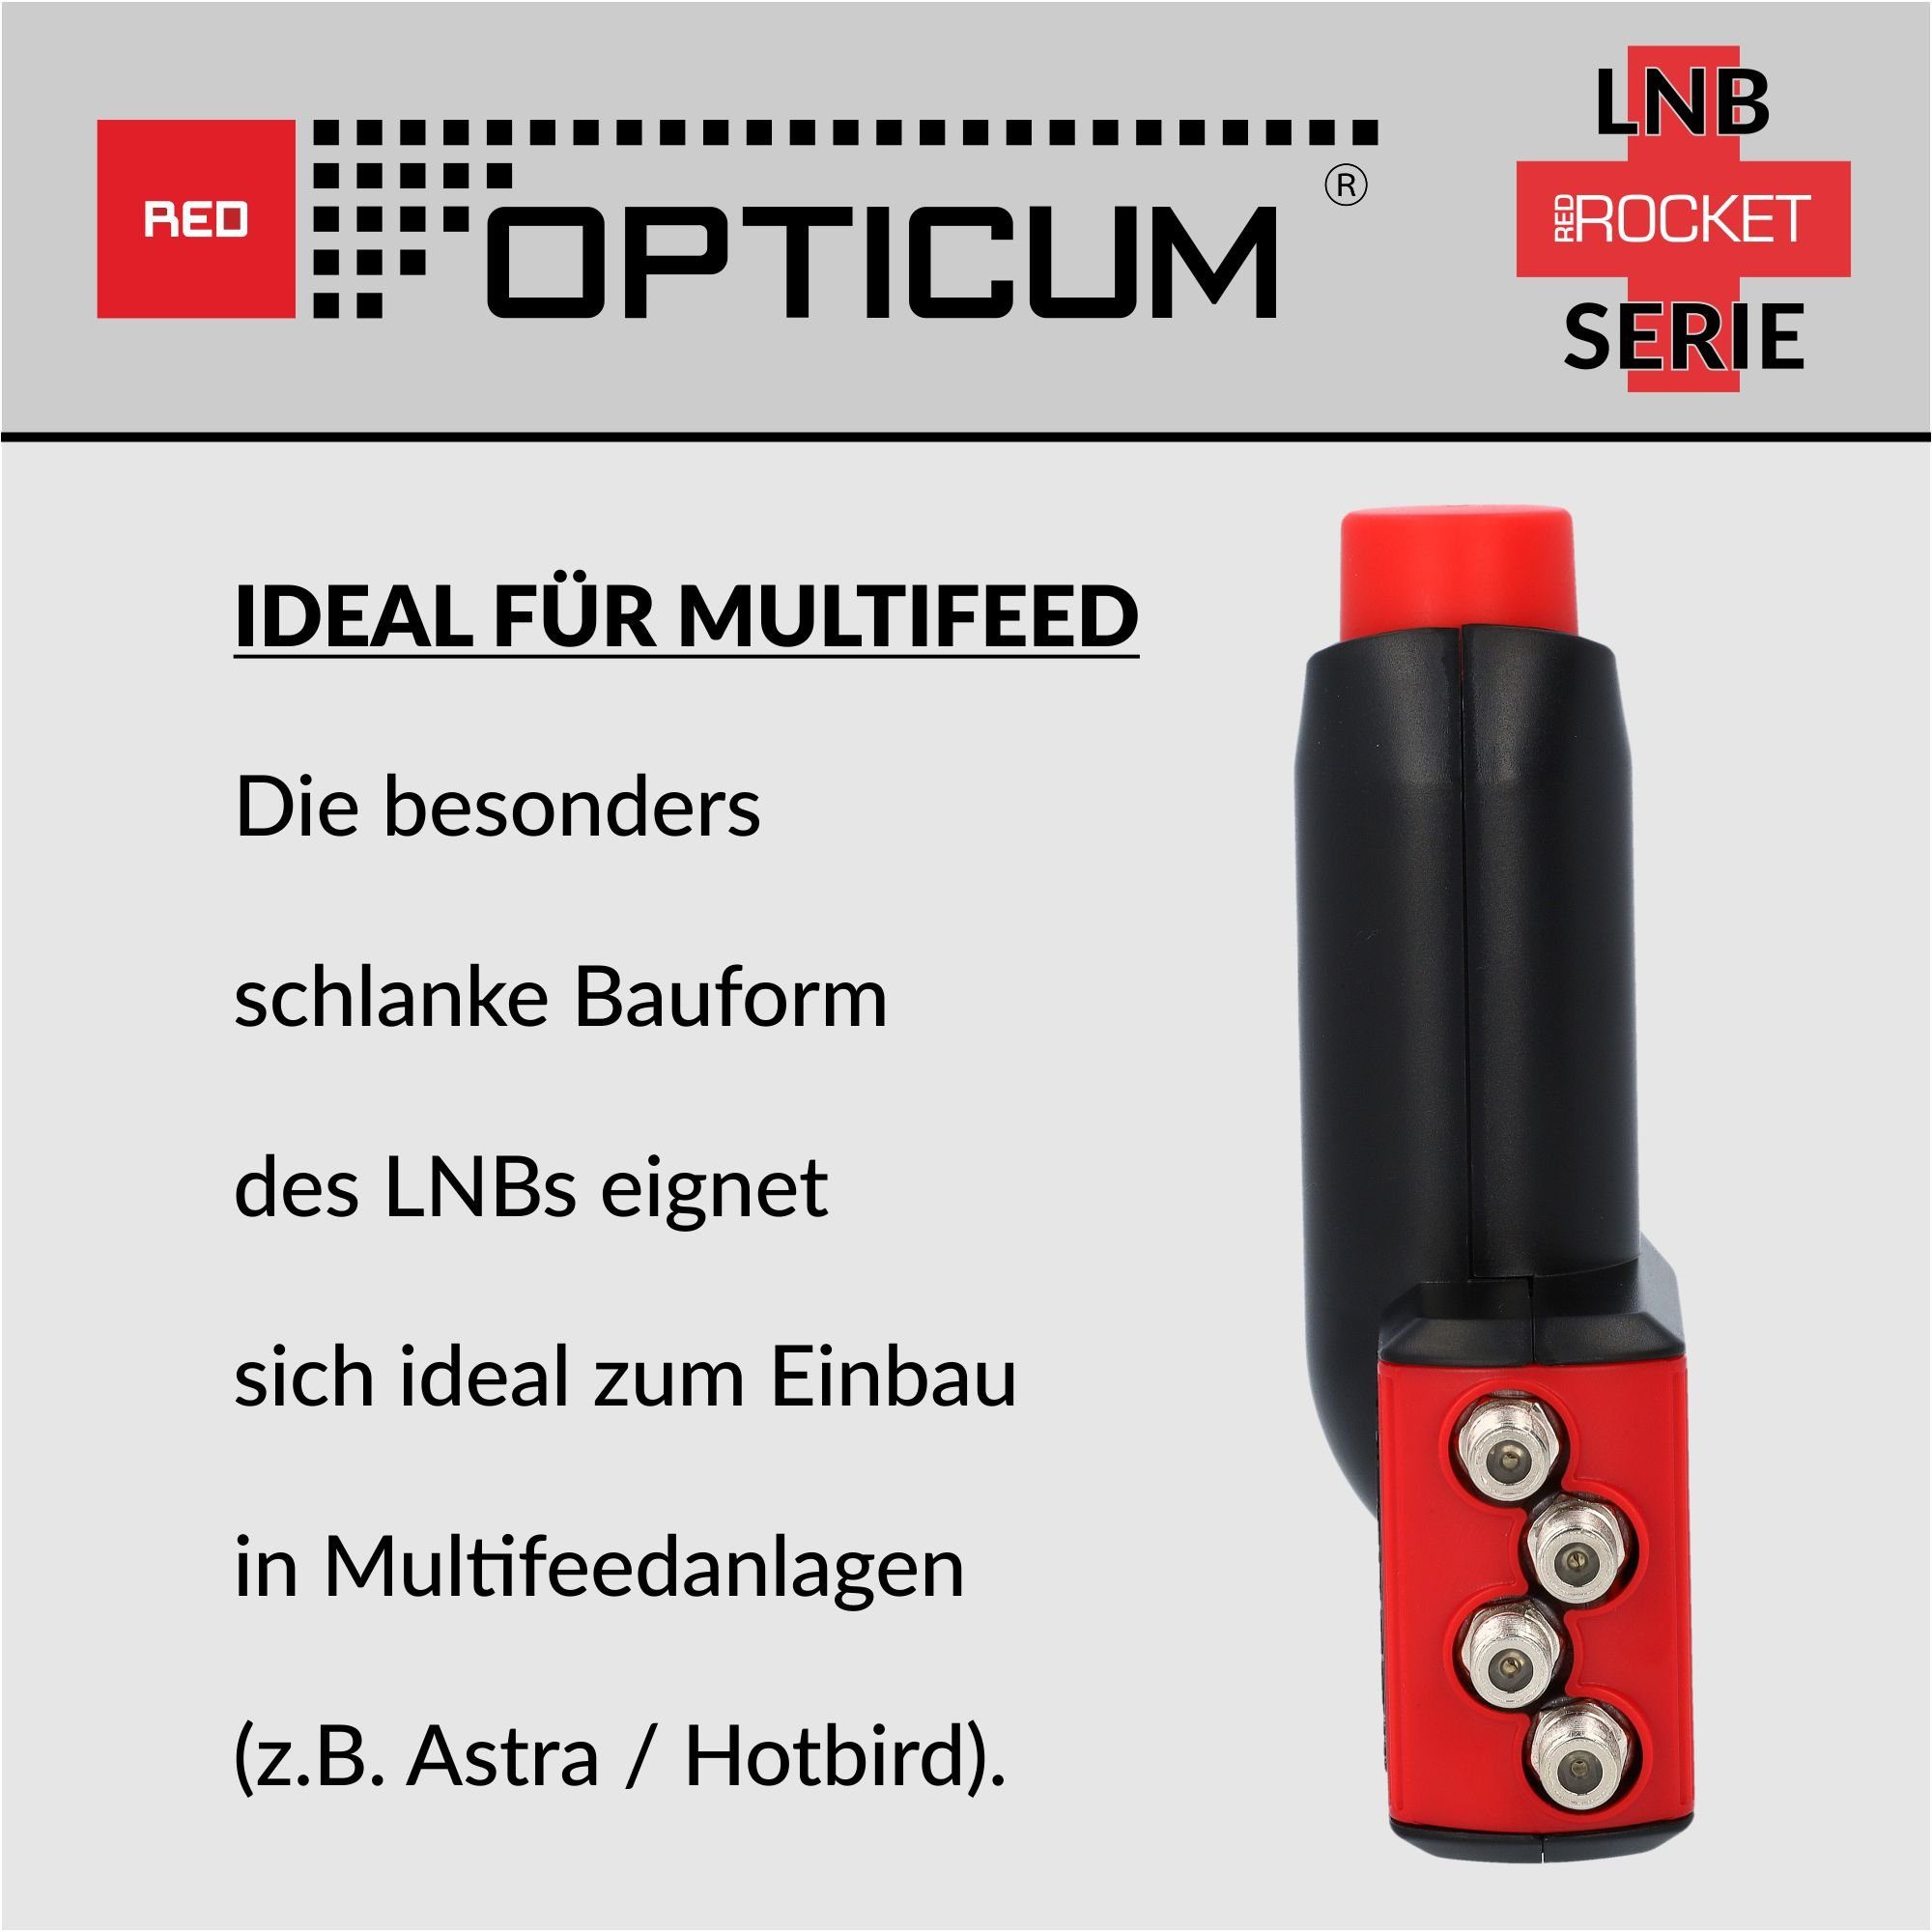 Rocket OPTICUM Quad (Hitze- Multifeedhalter) RED LNB optimal kältebeständig, LQP-06H für 0.1dB Universal-Quad-LNB - & Rauschmaß Red